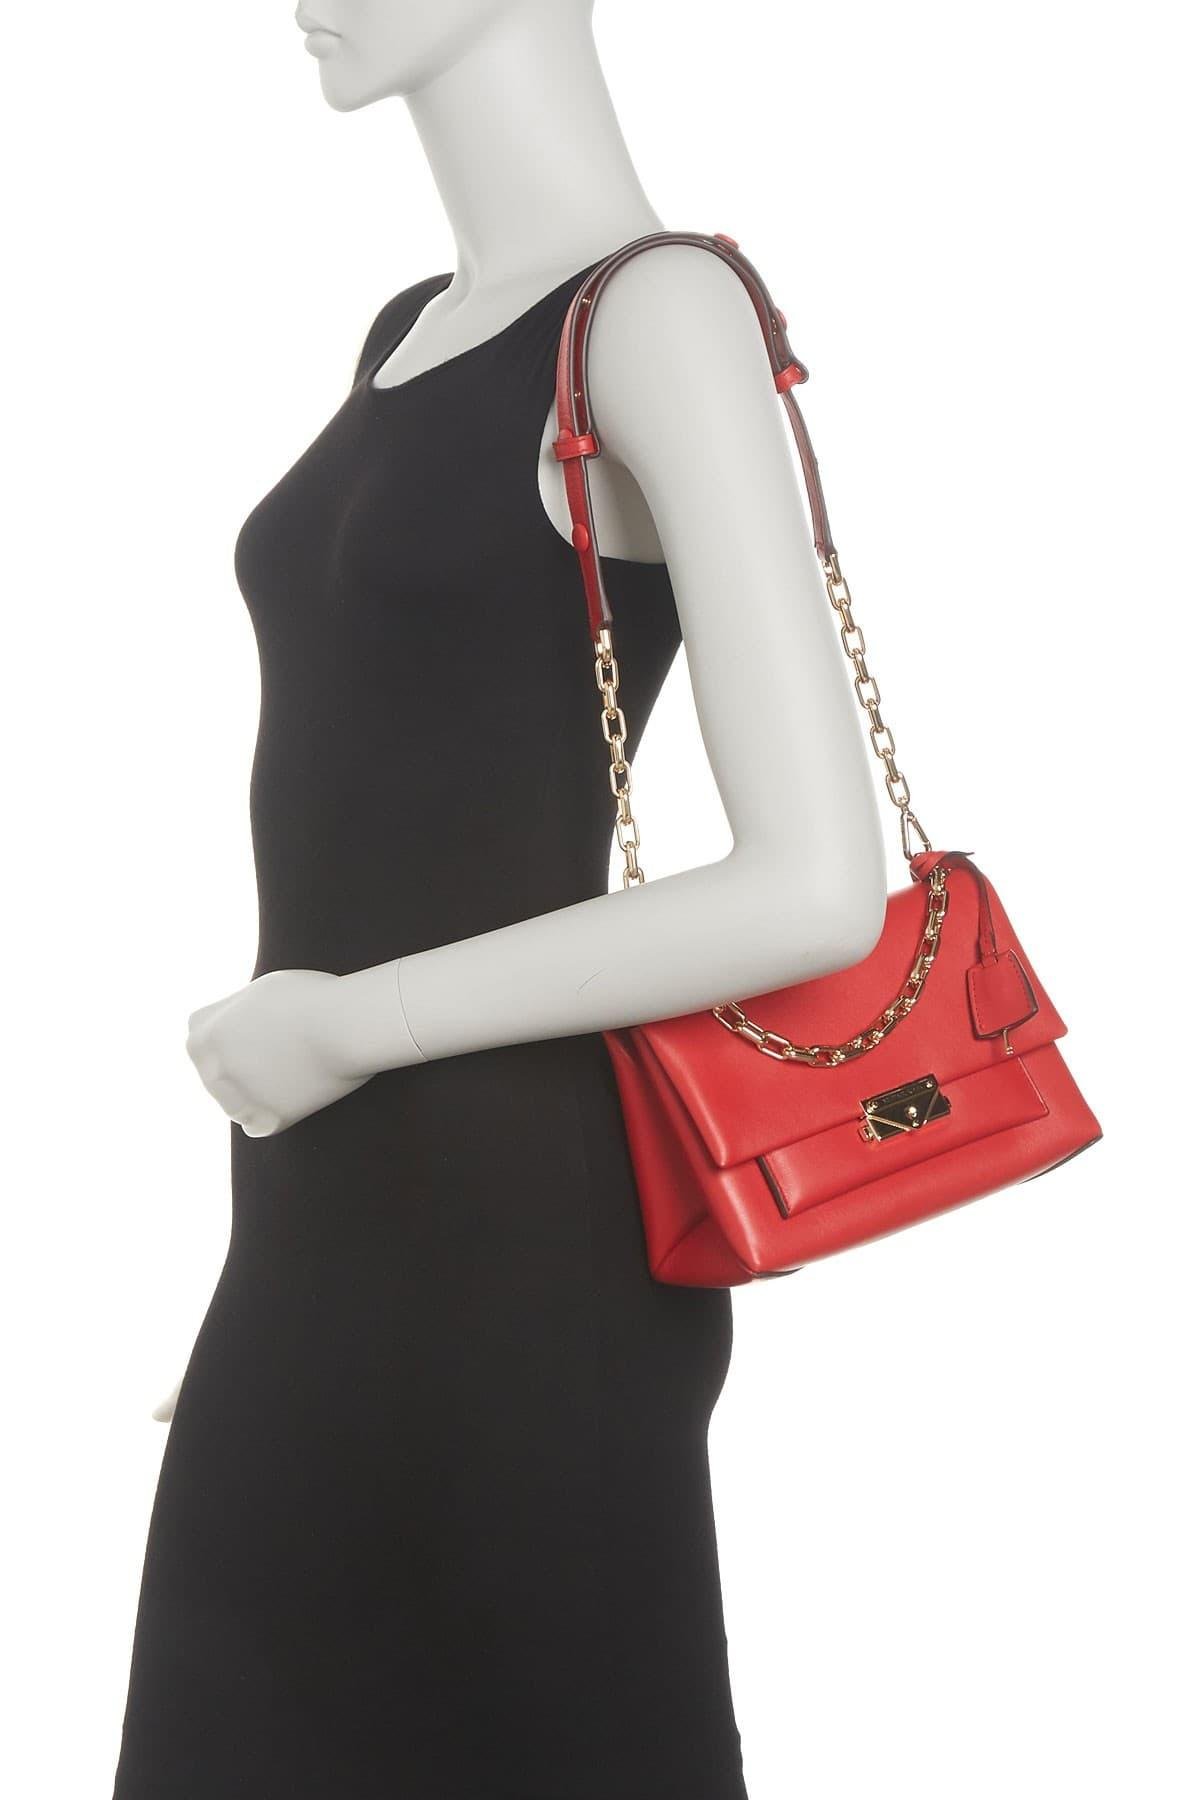 Michael Kors Cece Medium Leather Shoulder Bag in Red | Lyst